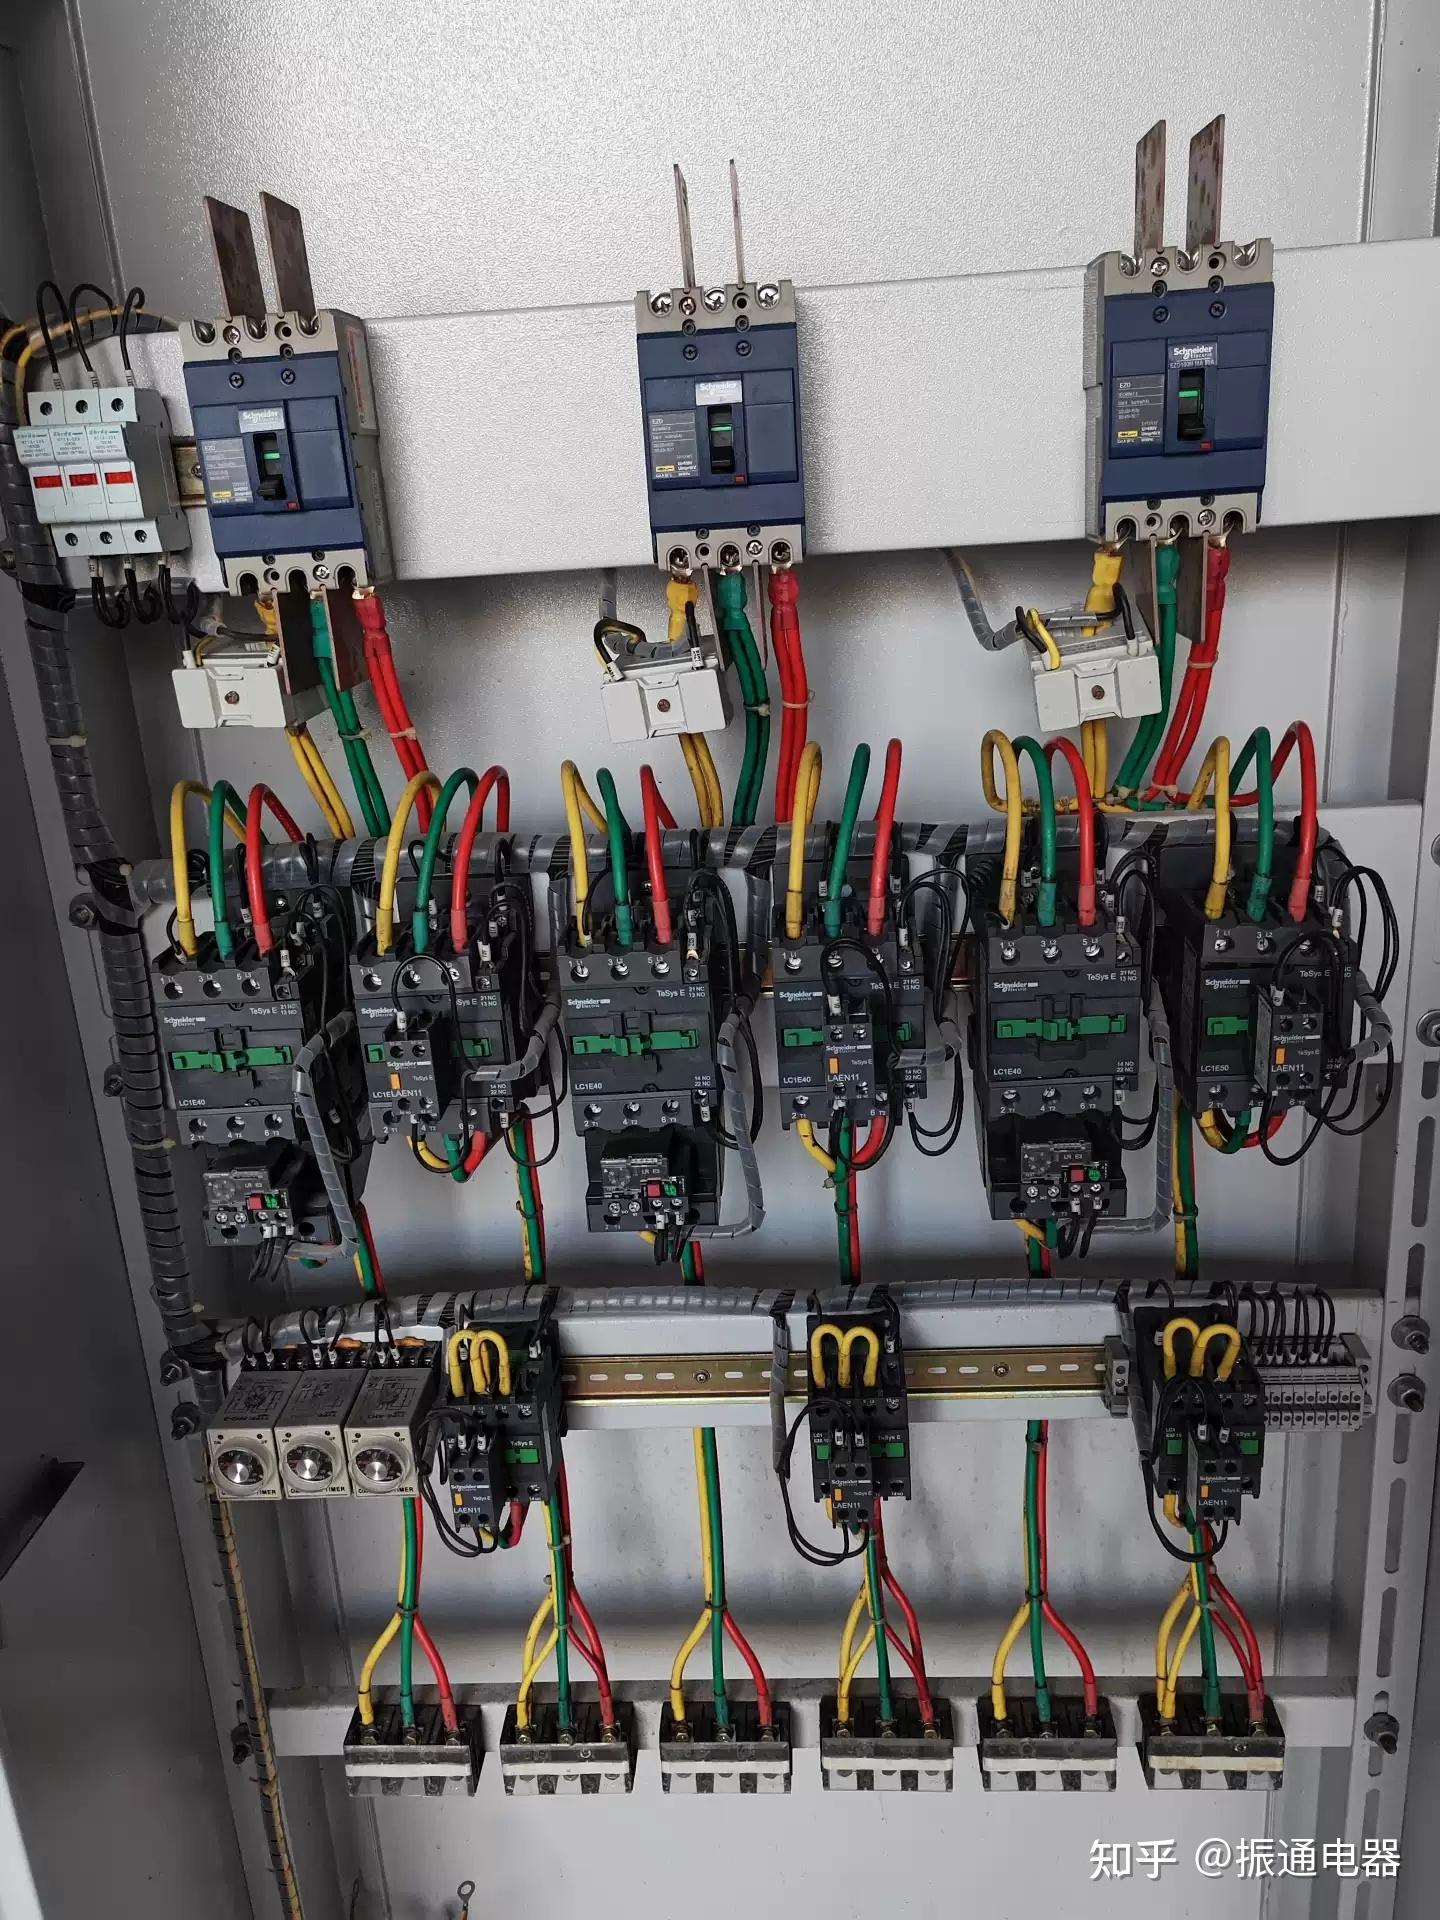 二例电动机自锁控制的电路图：完整自锁控制及点动与自锁的混合控制 - 电工天下